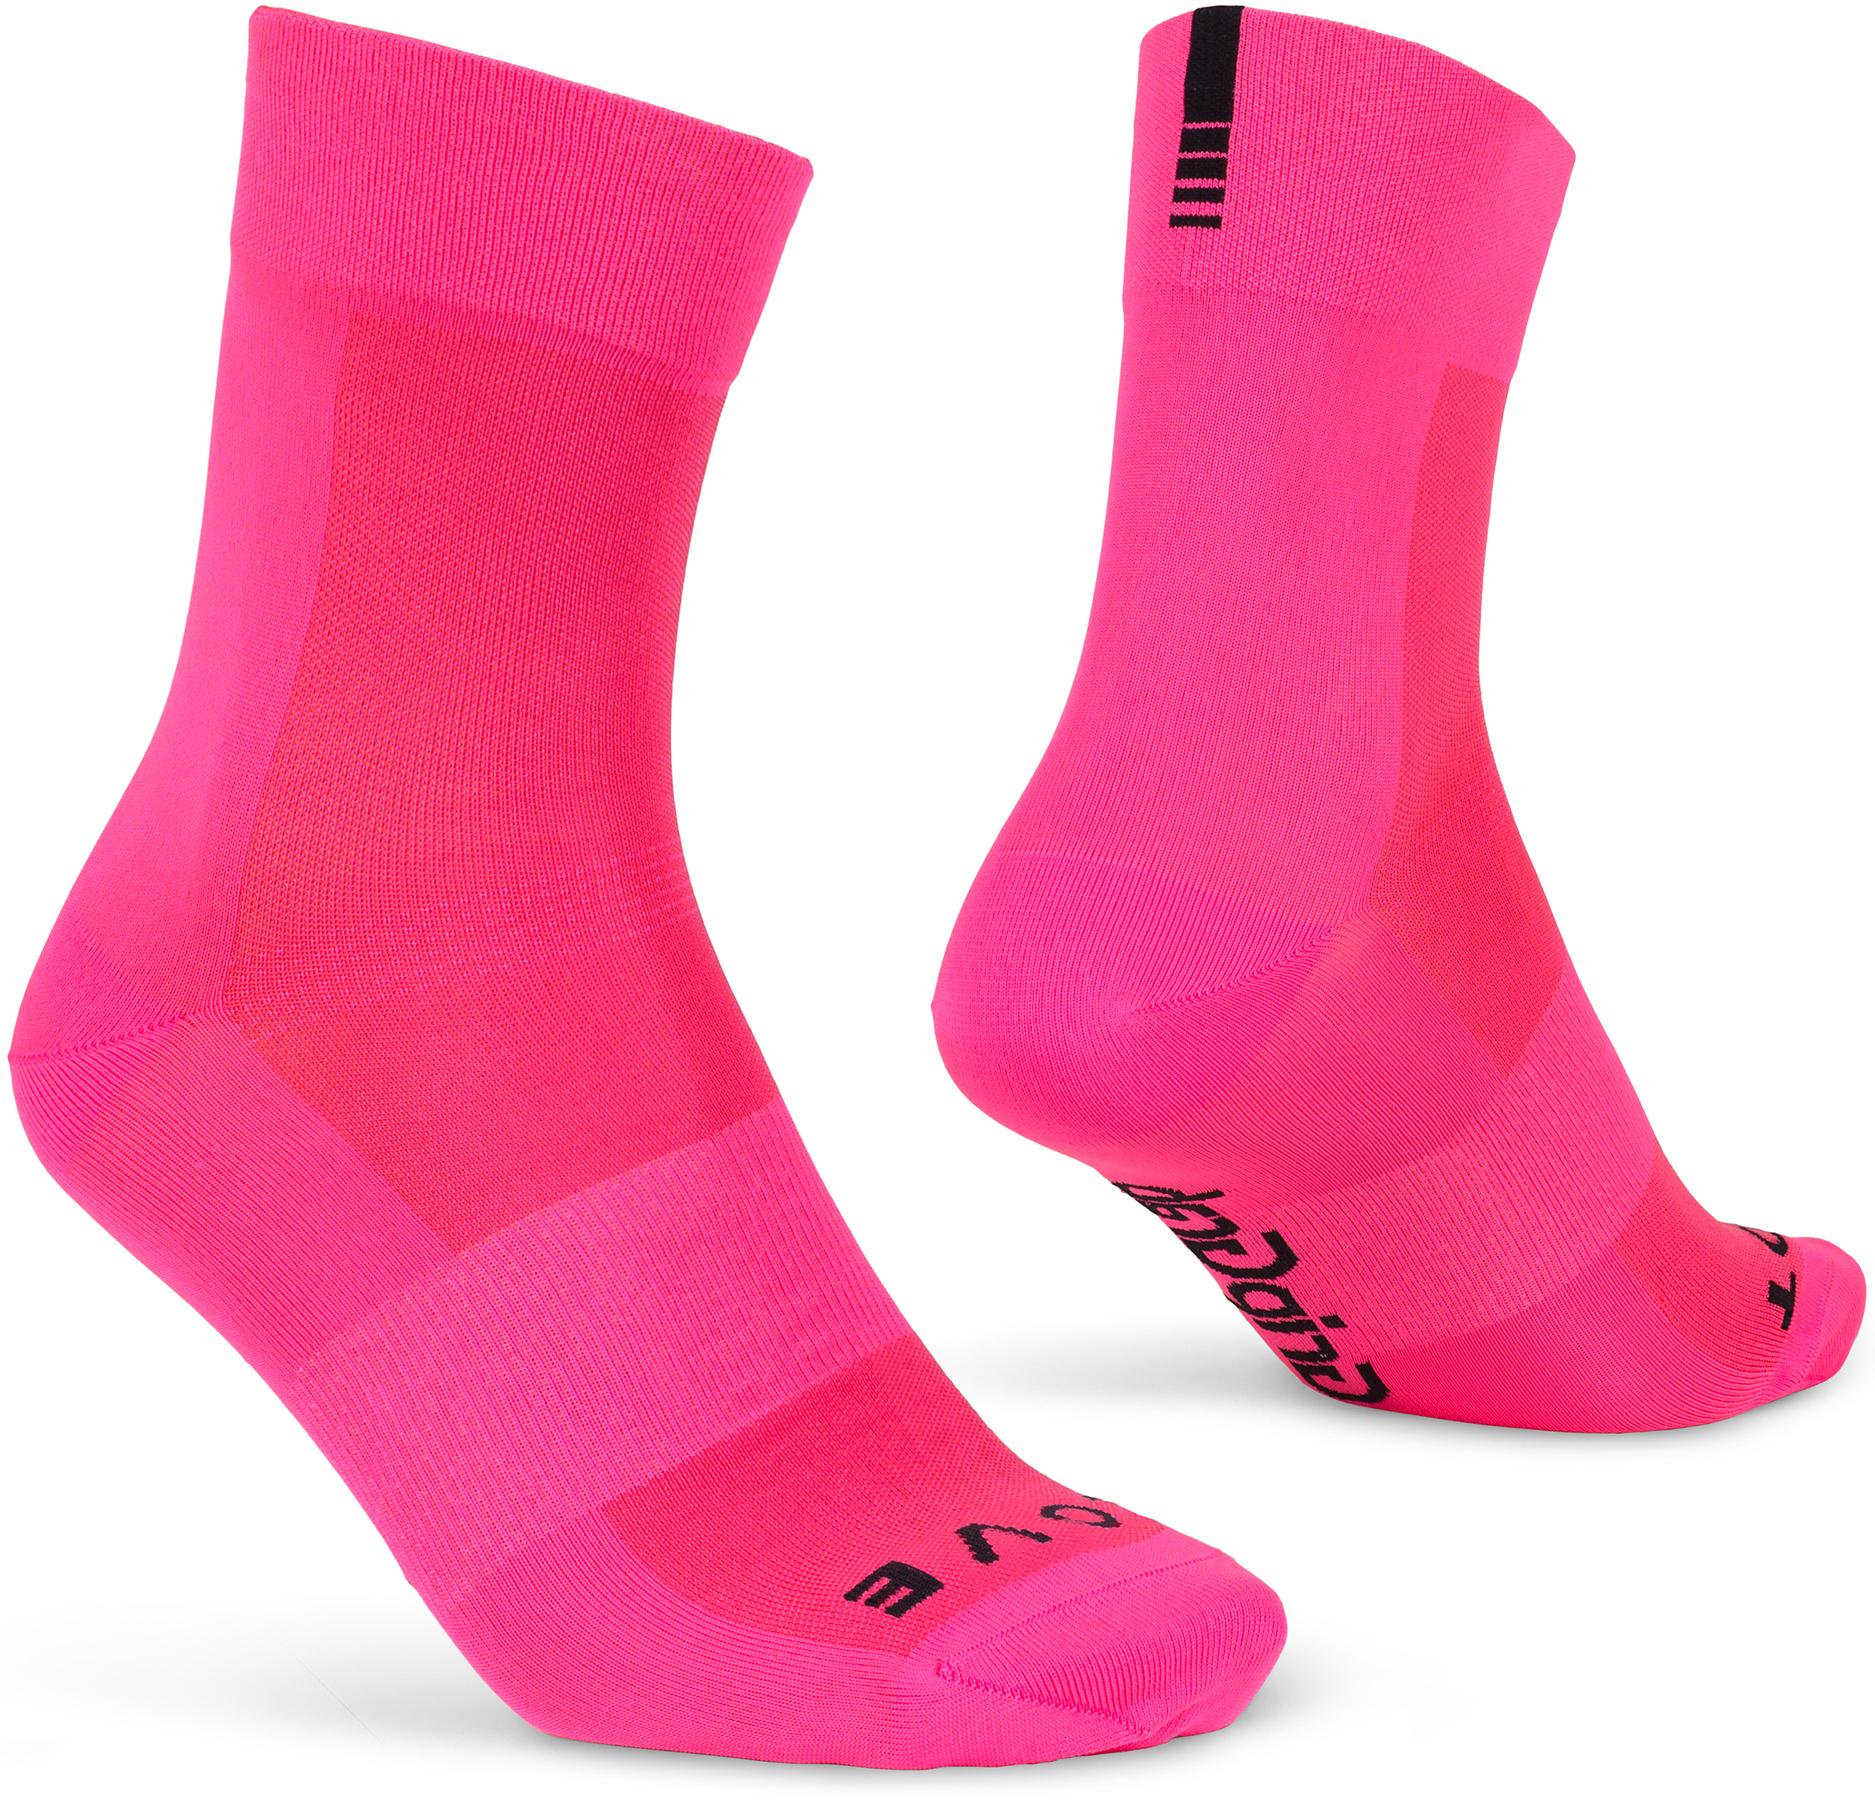 Gripgrab Lightweight Sl Socks - Hi-viz Pink